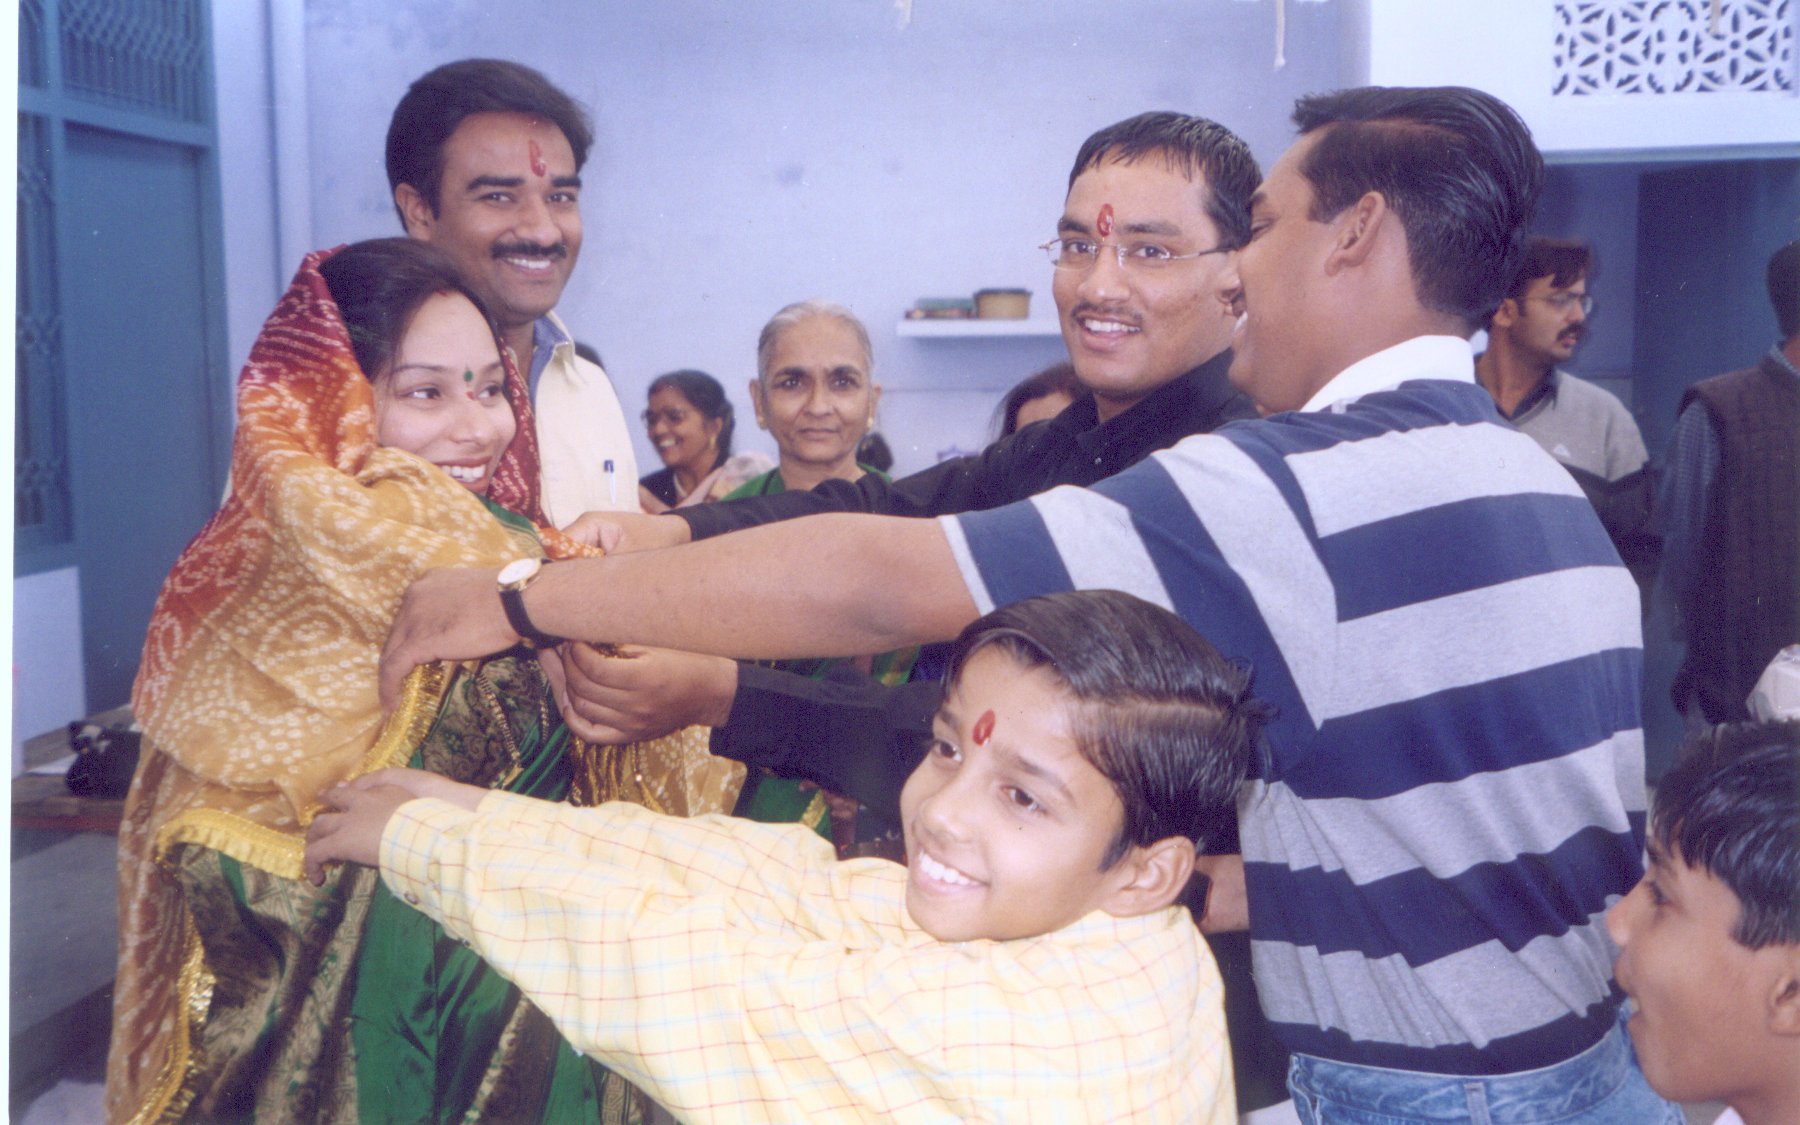 Bhaiya and Bhabhi along with Ajay and Abhay. Click to see larger image.